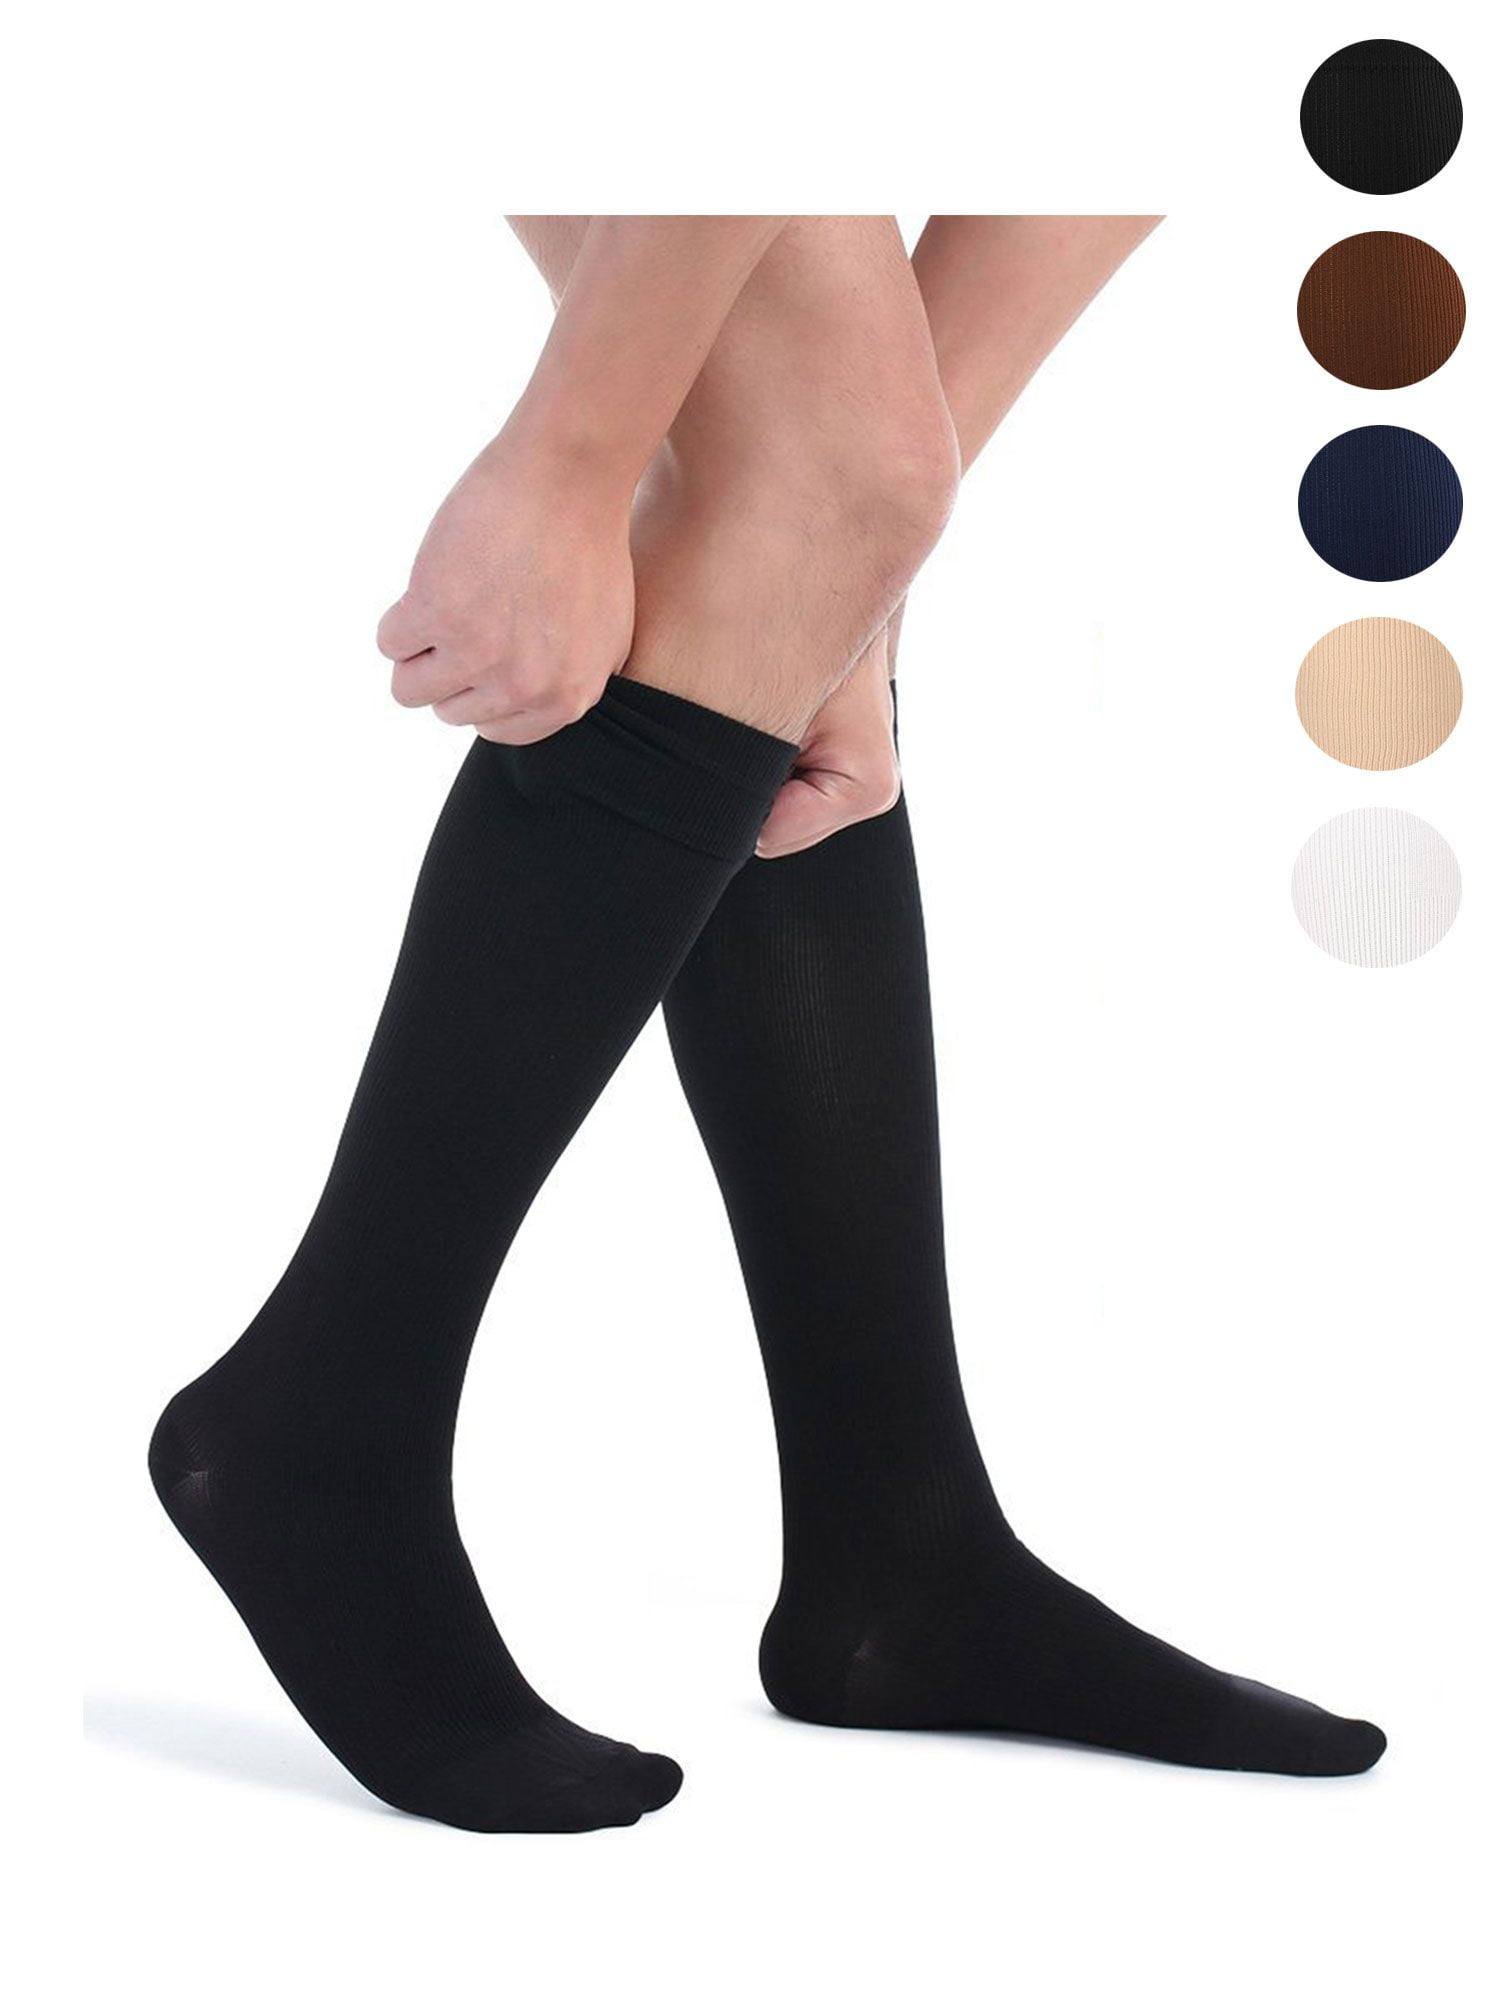 Sugar Skull Tattoo Athletic Tube Stockings Women Men Classics Knee High Socks Sport Long Sock One Size 